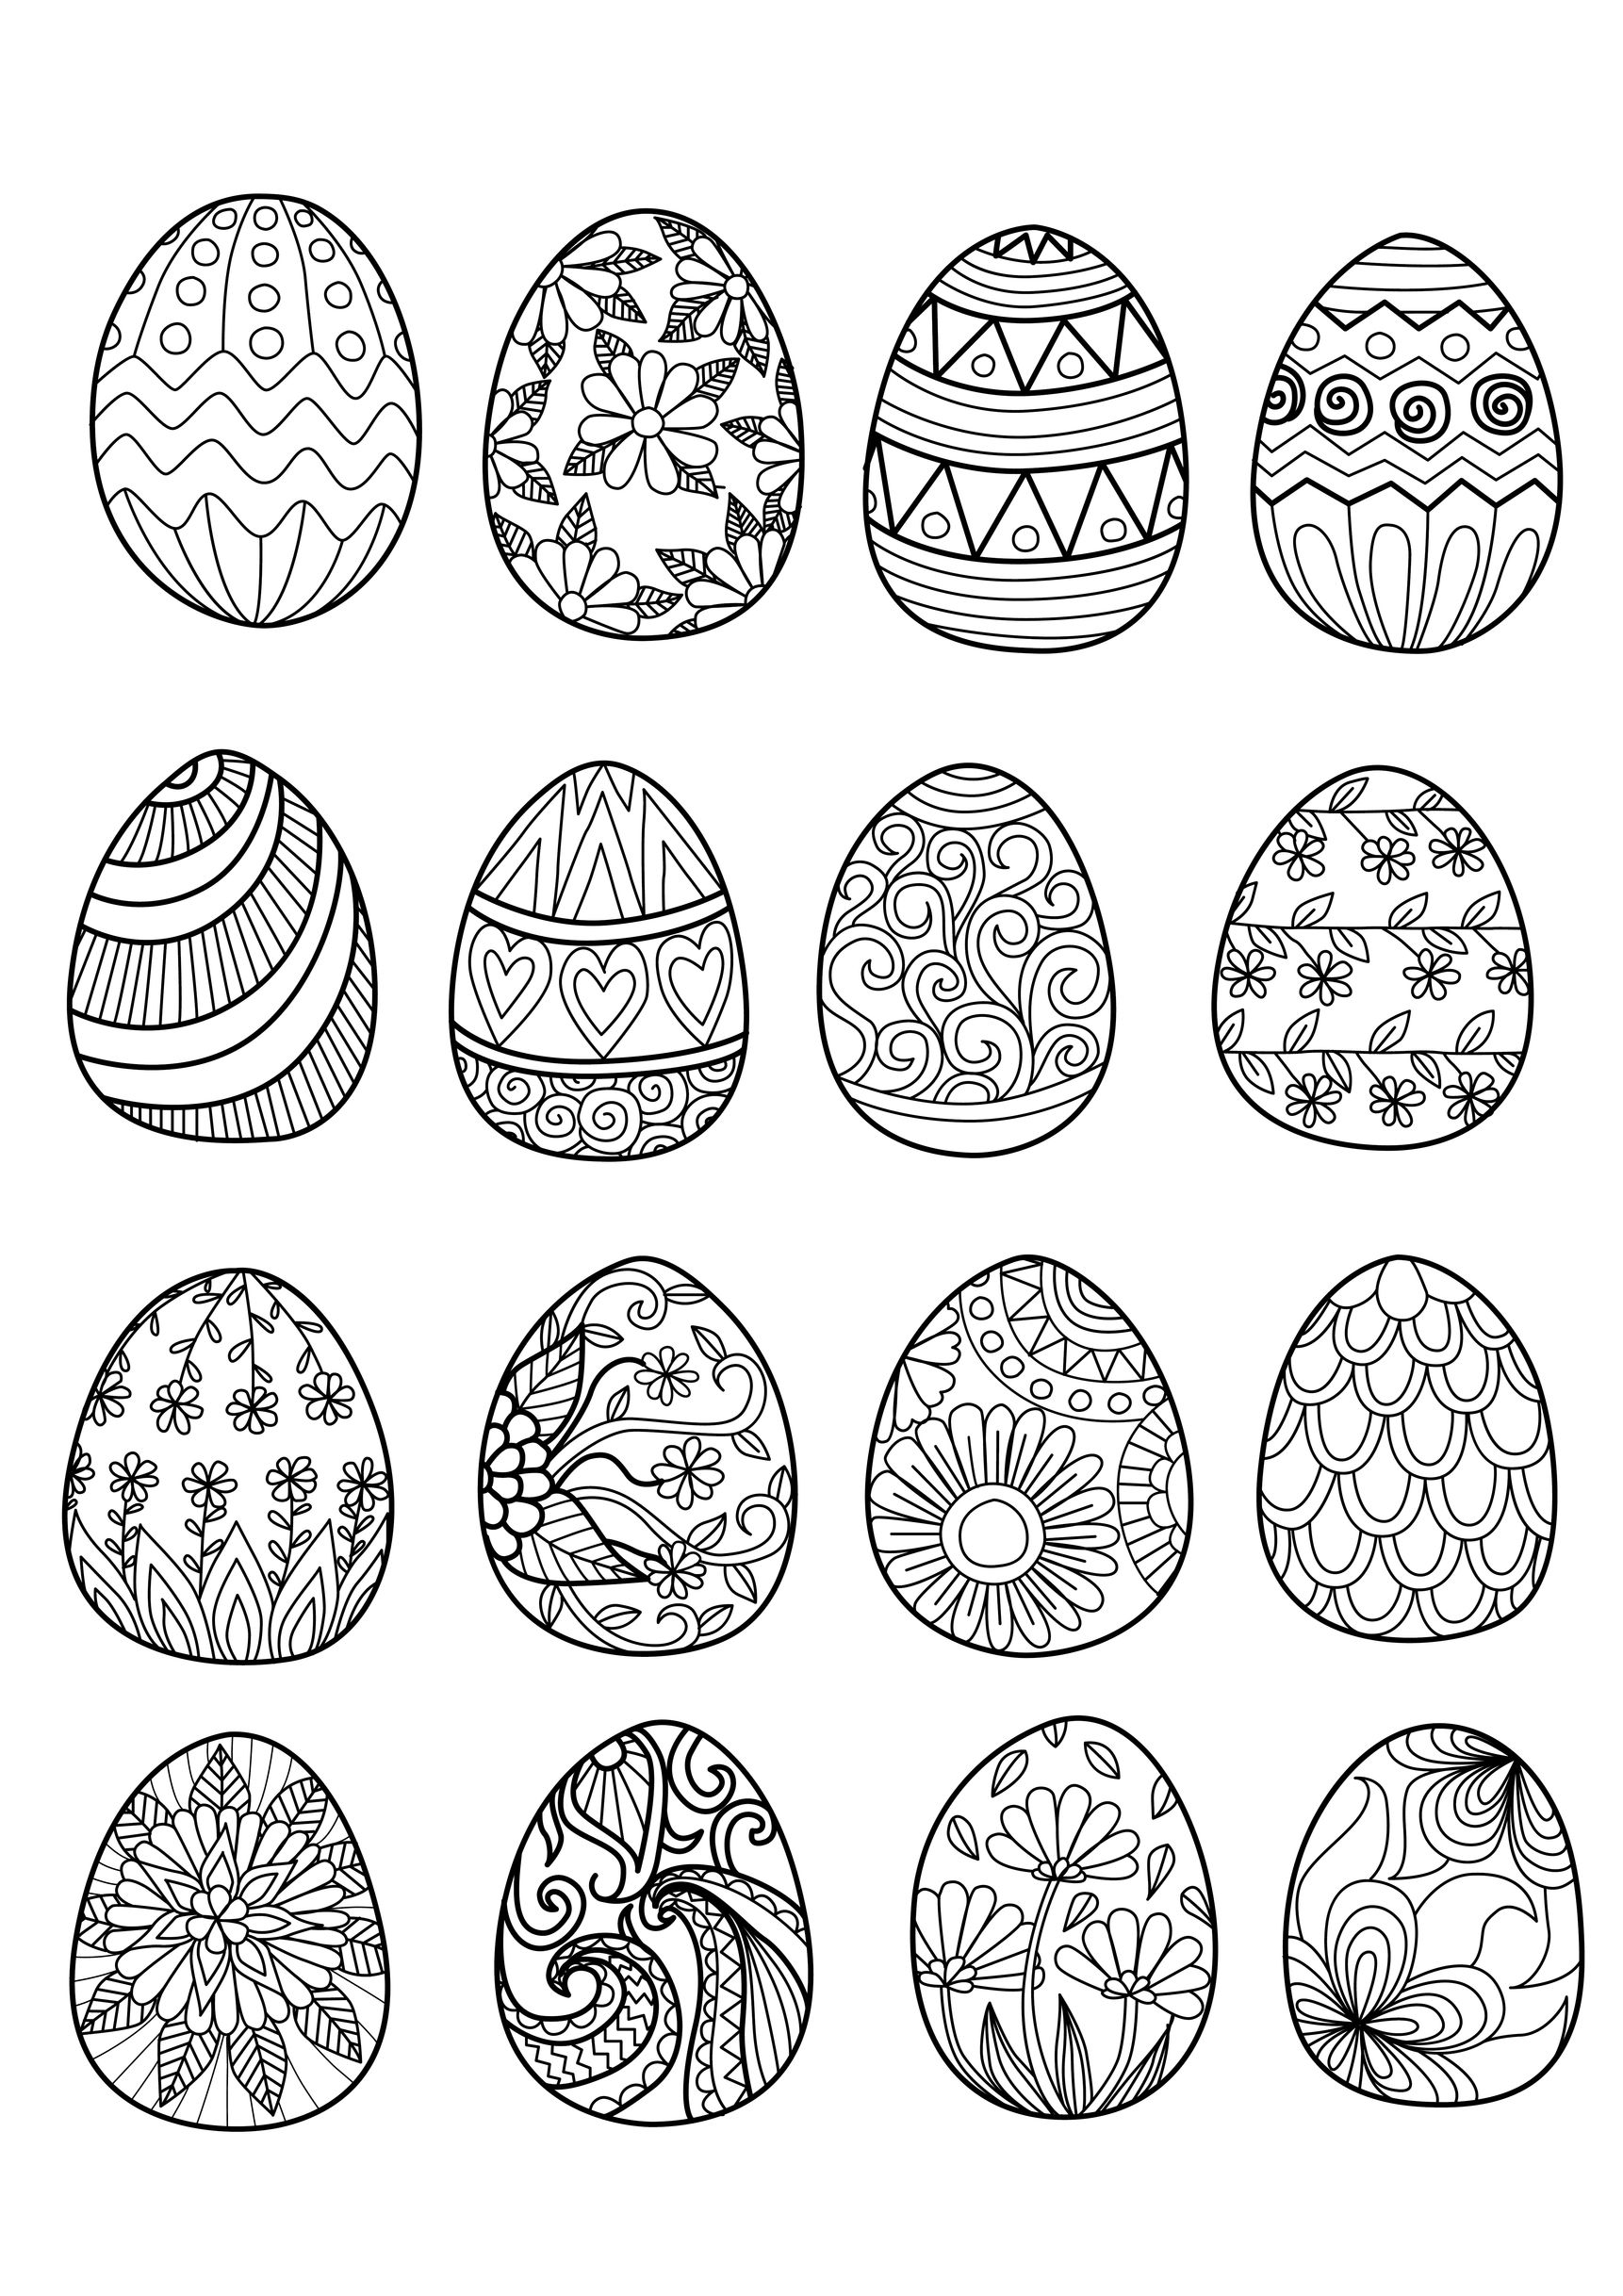 Image de Pâques à imprimer et à colorier